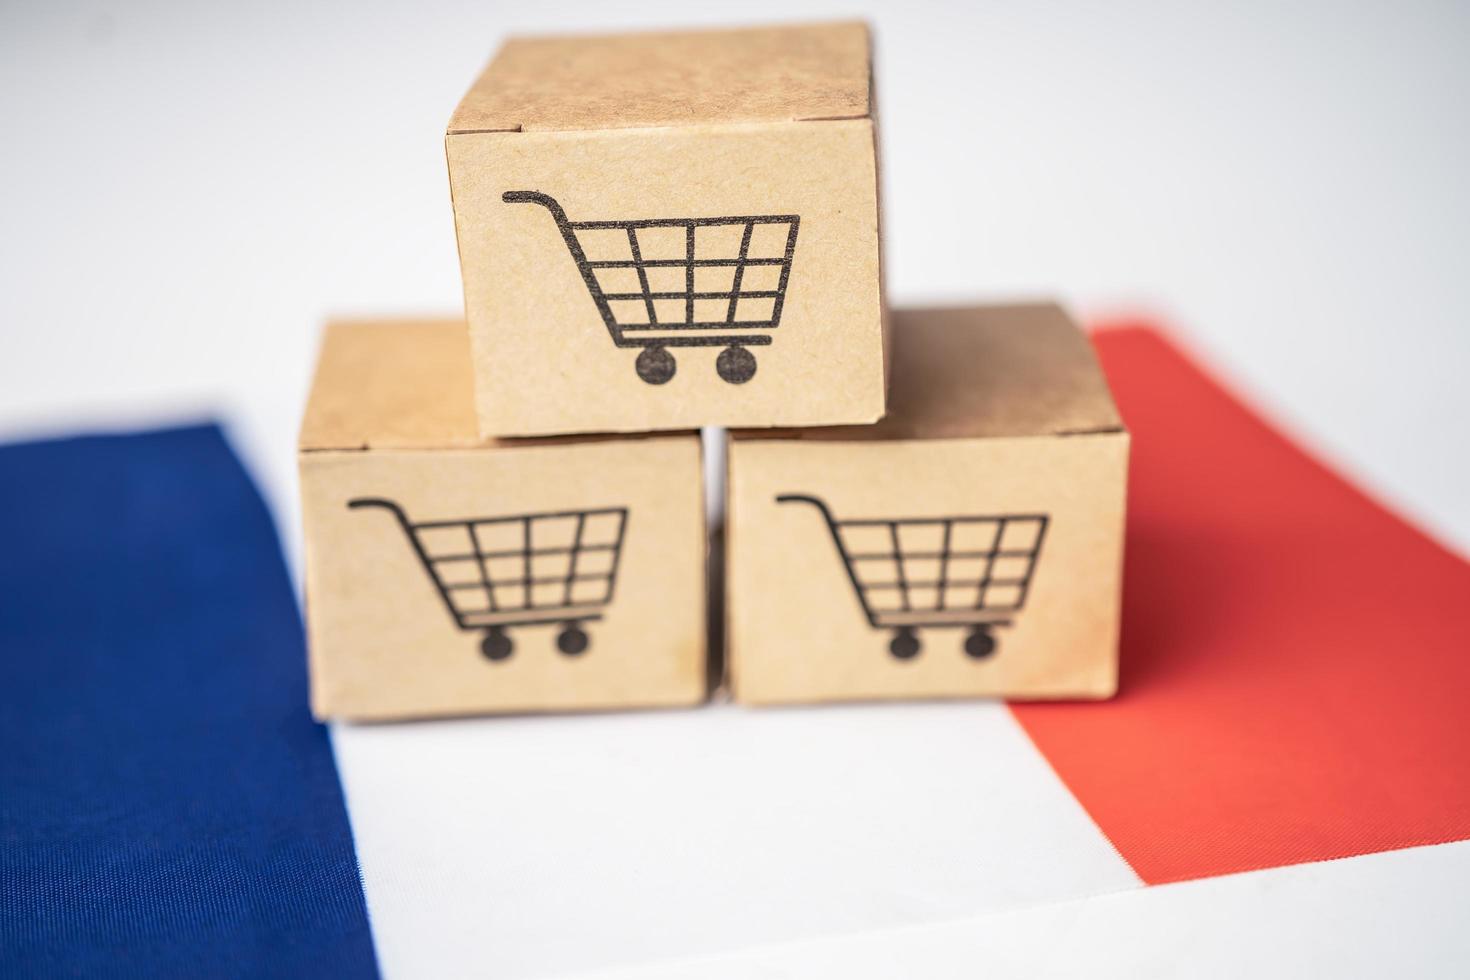 Box mit Warenkorb-Logo und Frankreich-Flagge, Import-Export-Shopping online oder E-Commerce-Finanzierungslieferservice-Shop-Produktversand, Handel, Lieferantenkonzept. foto